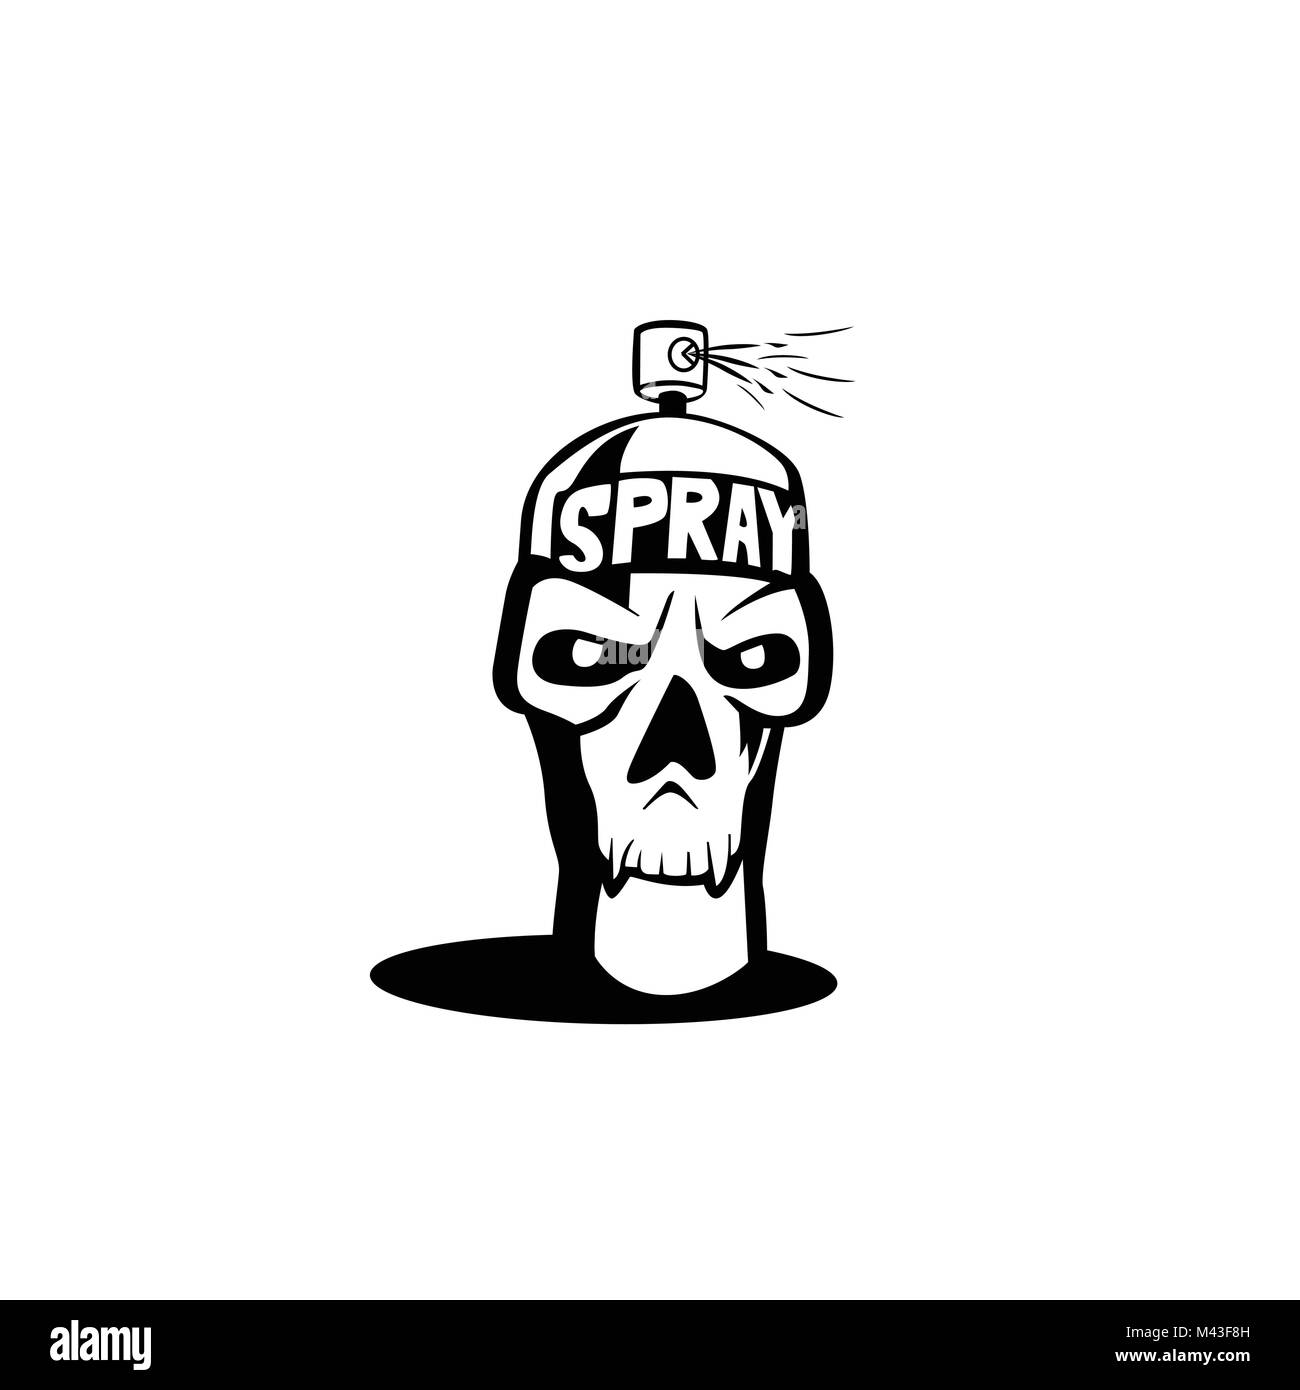 Spray icon skull, hipster, hand drawn, vector illustration Stock Vector